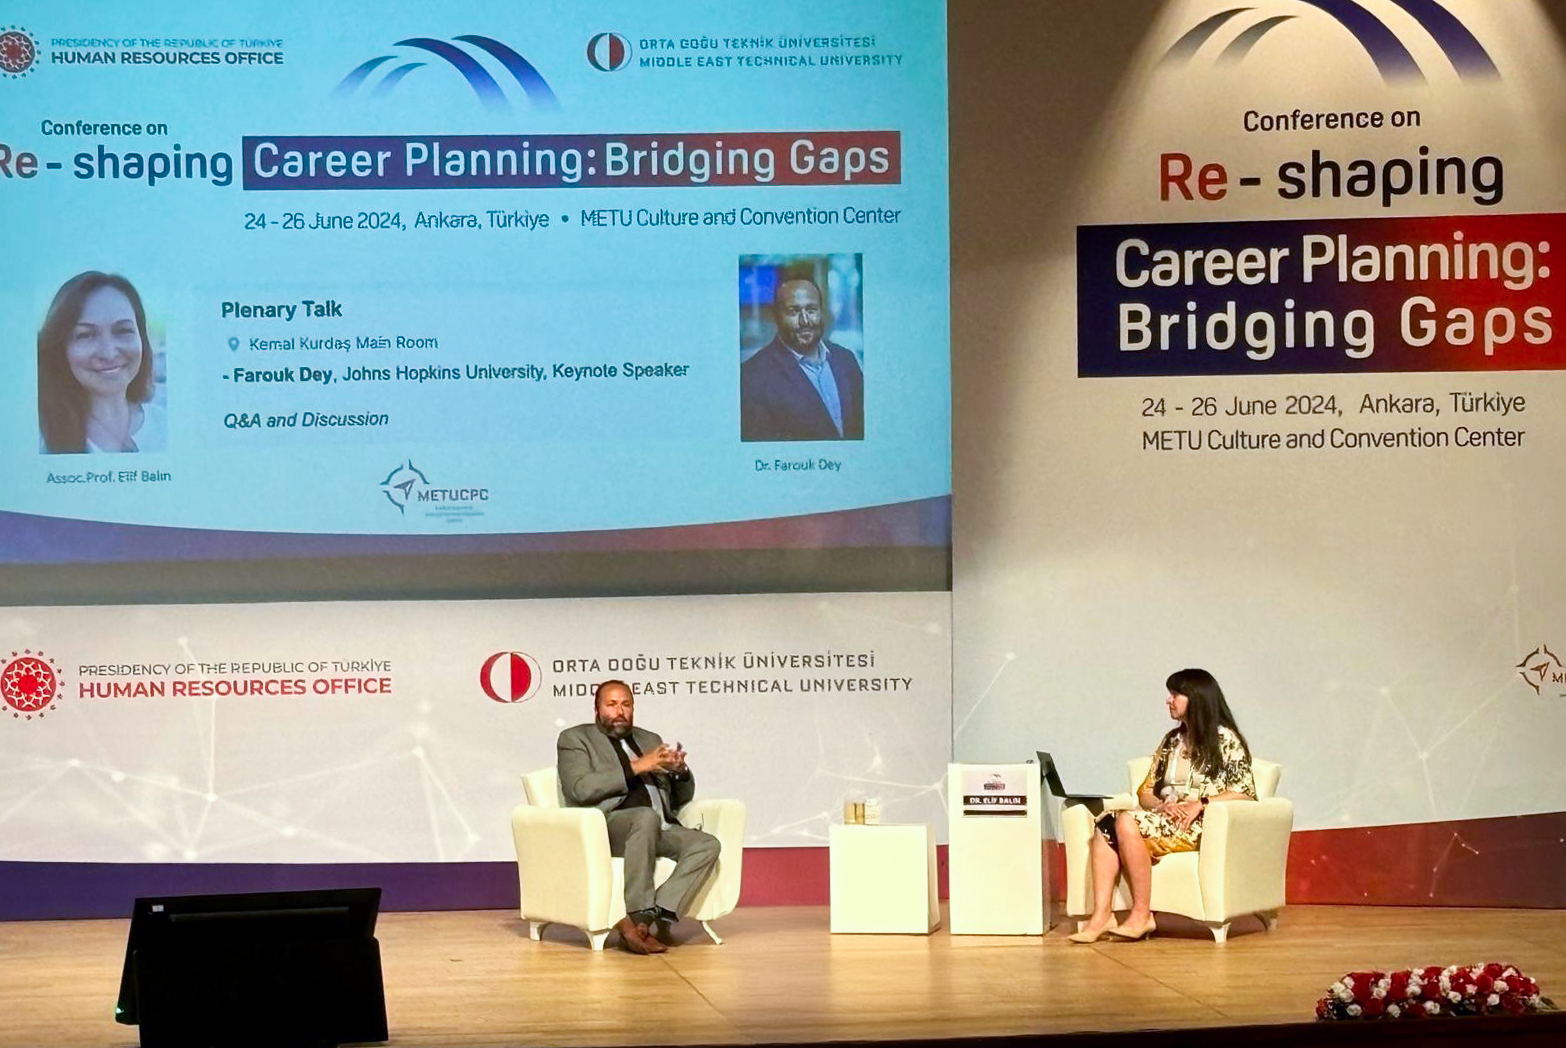 re-shaping-career-planning-bridging-gaps-konferansi-01.jpeg